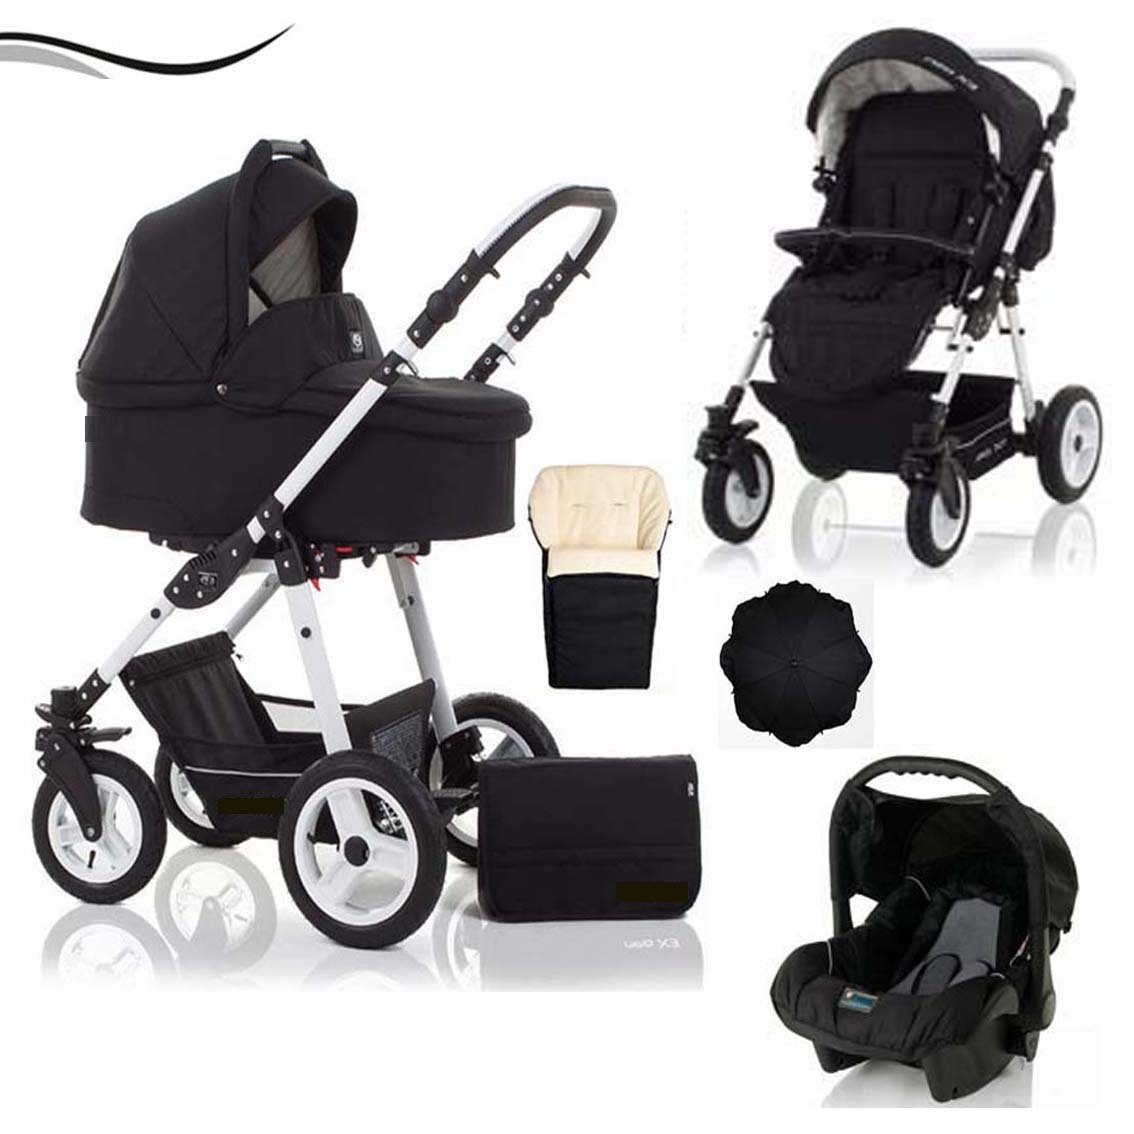 babies-on-wheels Kombi-Kinderwagen City Star 5 in 1 inkl. Autositz, Sonnenschirm und Fußsack - 18 Teile - von Geburt bis 4 Jahre in 16 Farben Schwarz